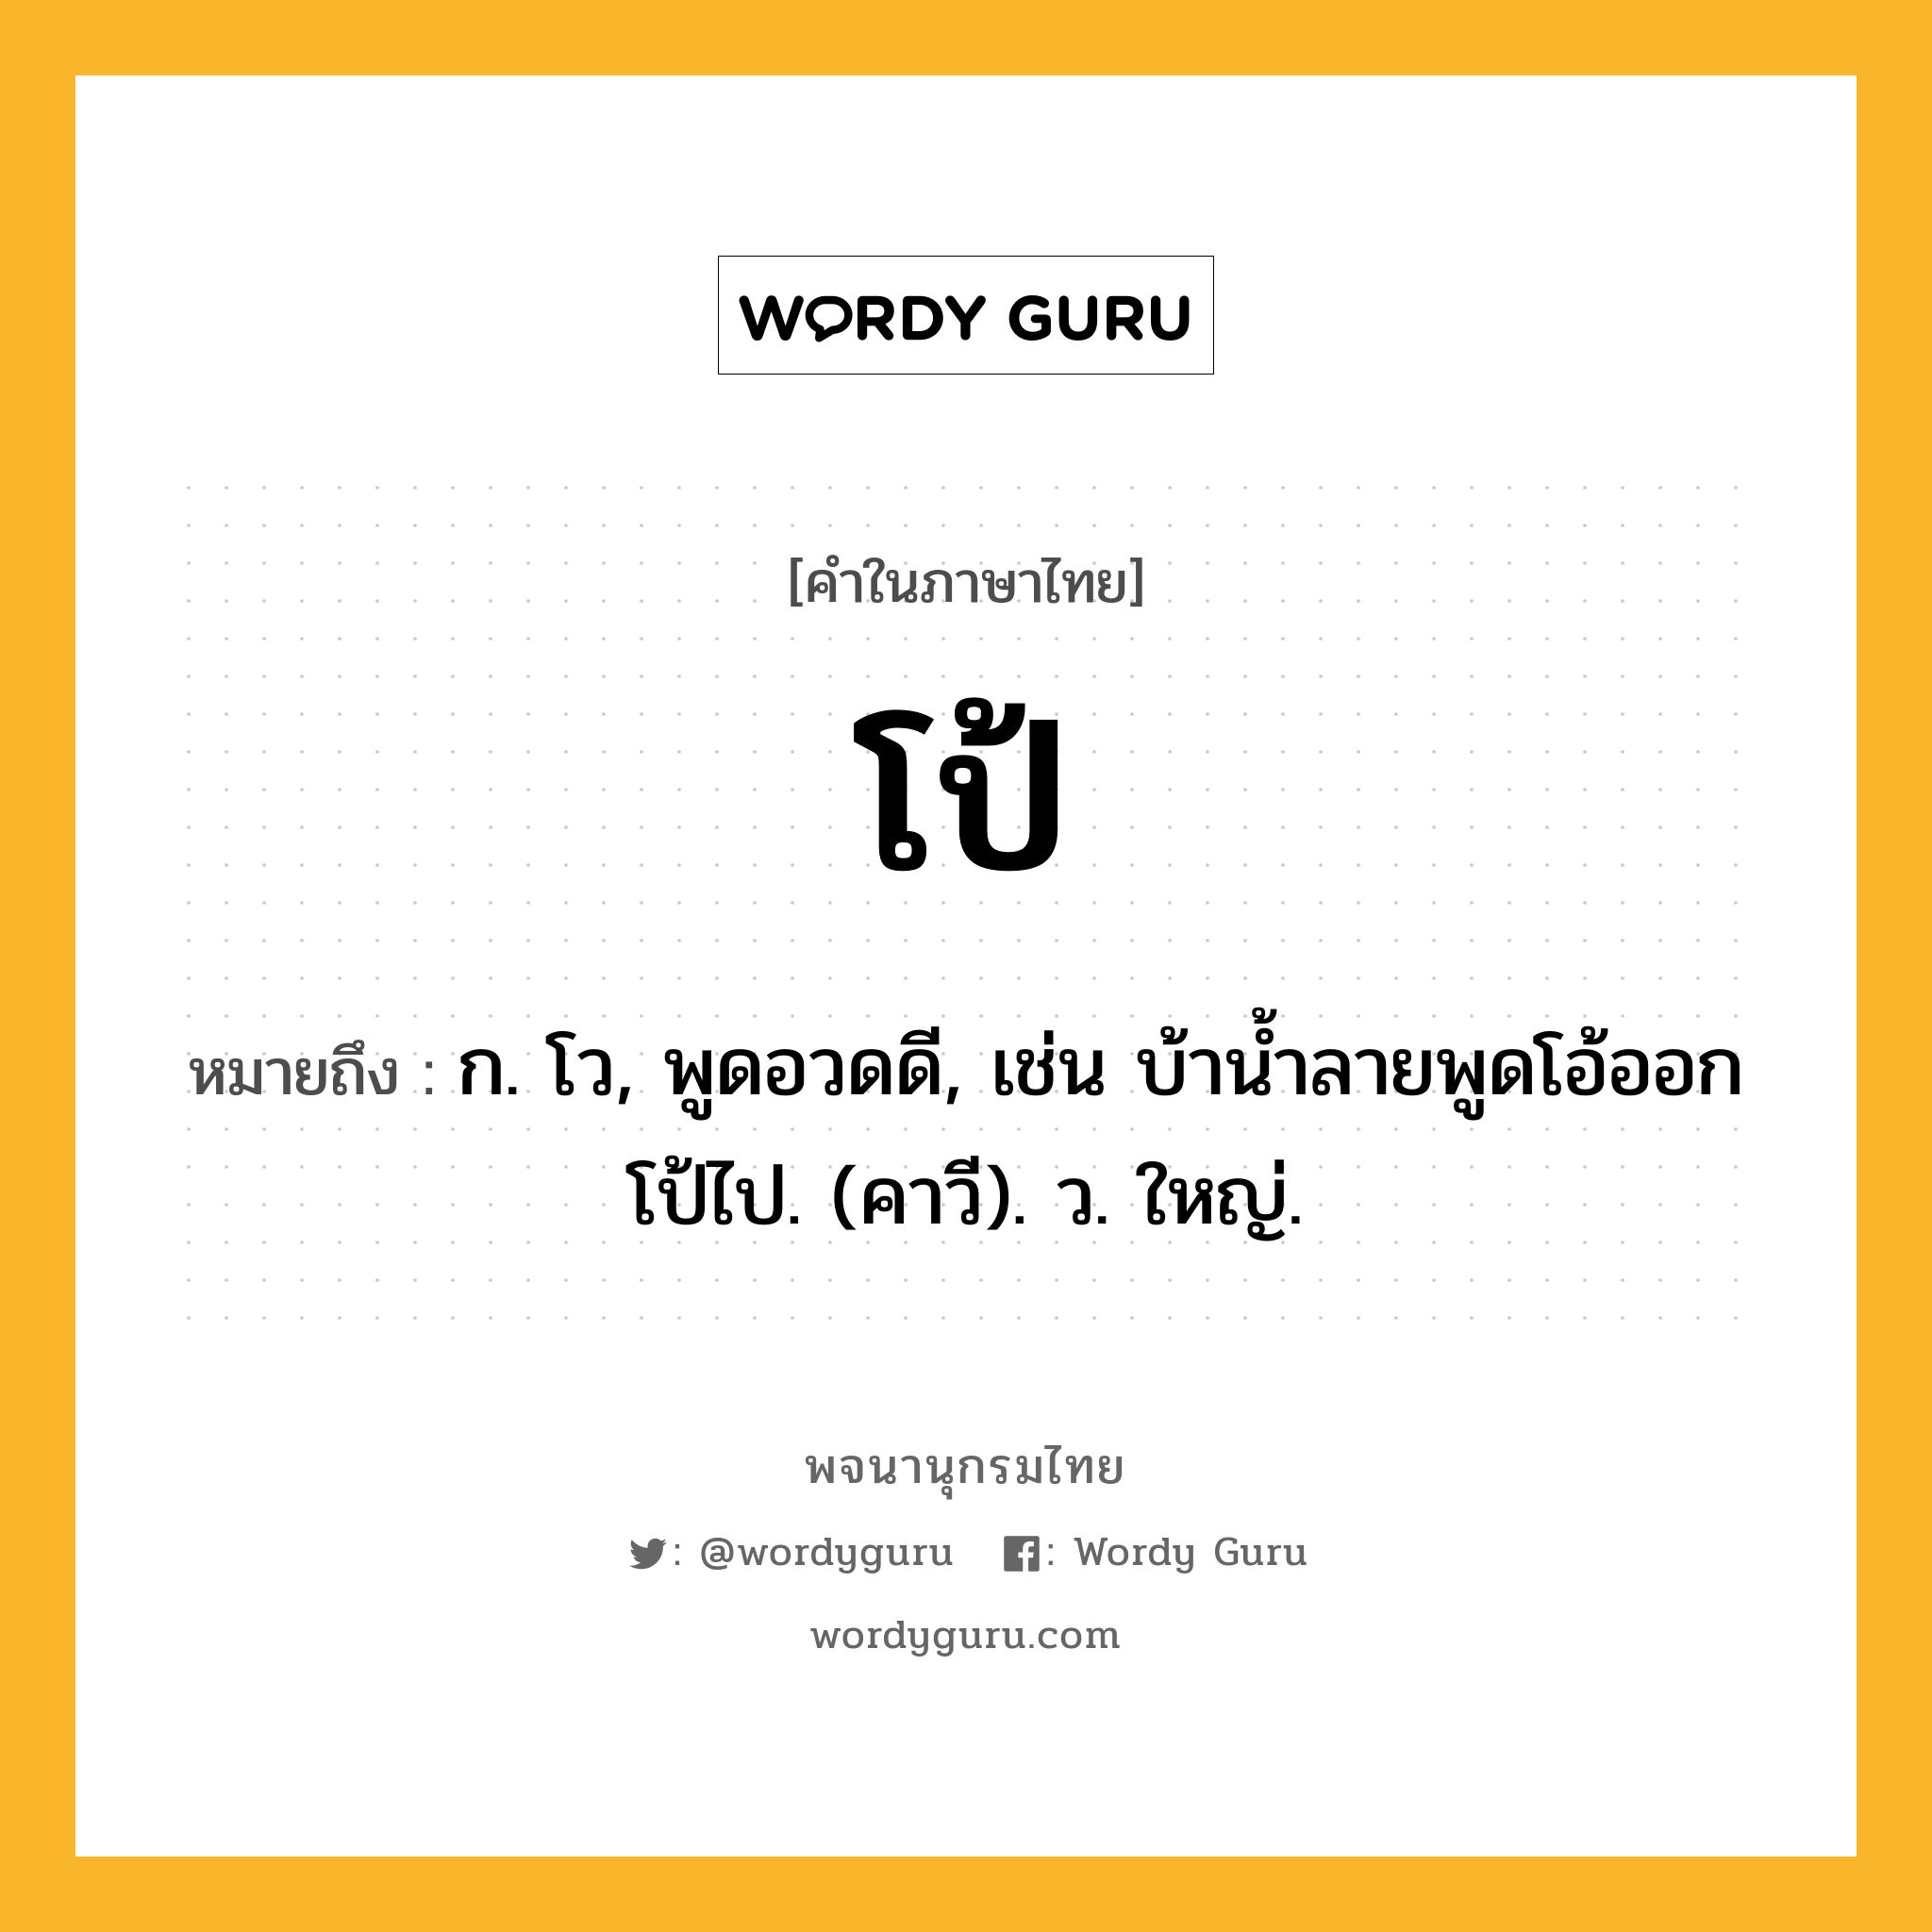 โป้ ความหมาย หมายถึงอะไร?, คำในภาษาไทย โป้ หมายถึง ก. โว, พูดอวดดี, เช่น บ้านํ้าลายพูดโอ้ออกโป้ไป. (คาวี). ว. ใหญ่.